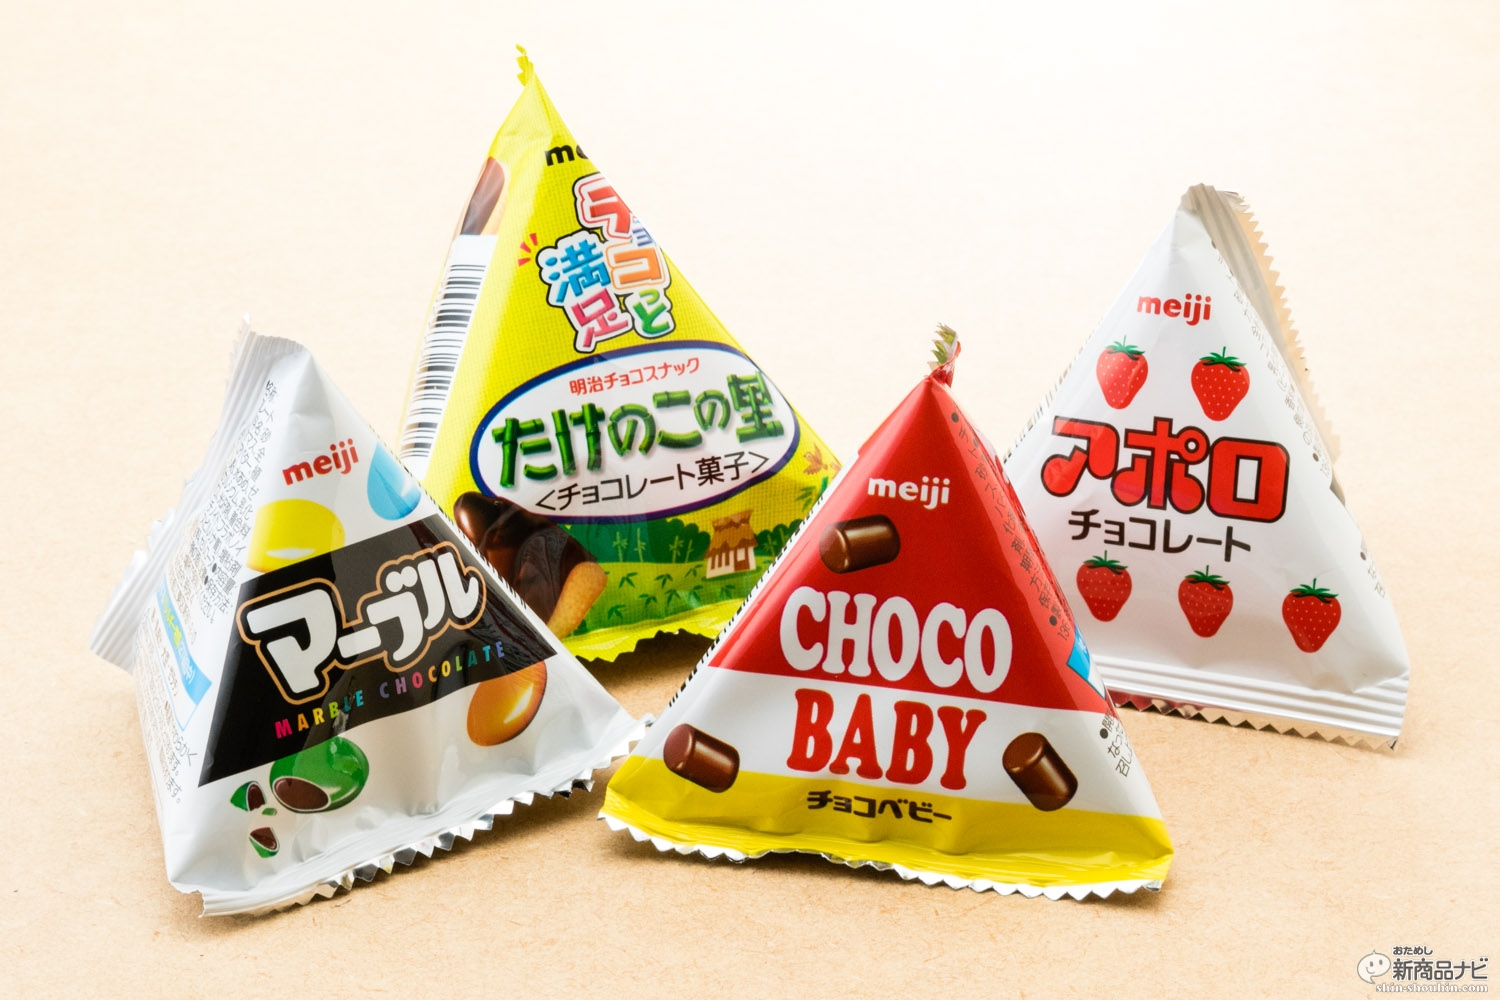 おためし新商品ナビ Blog Archive 明治 プチパック 5種類 定番チョコ のオールスターが揃い踏み 目印は食べきりサイズの三角パッケージ